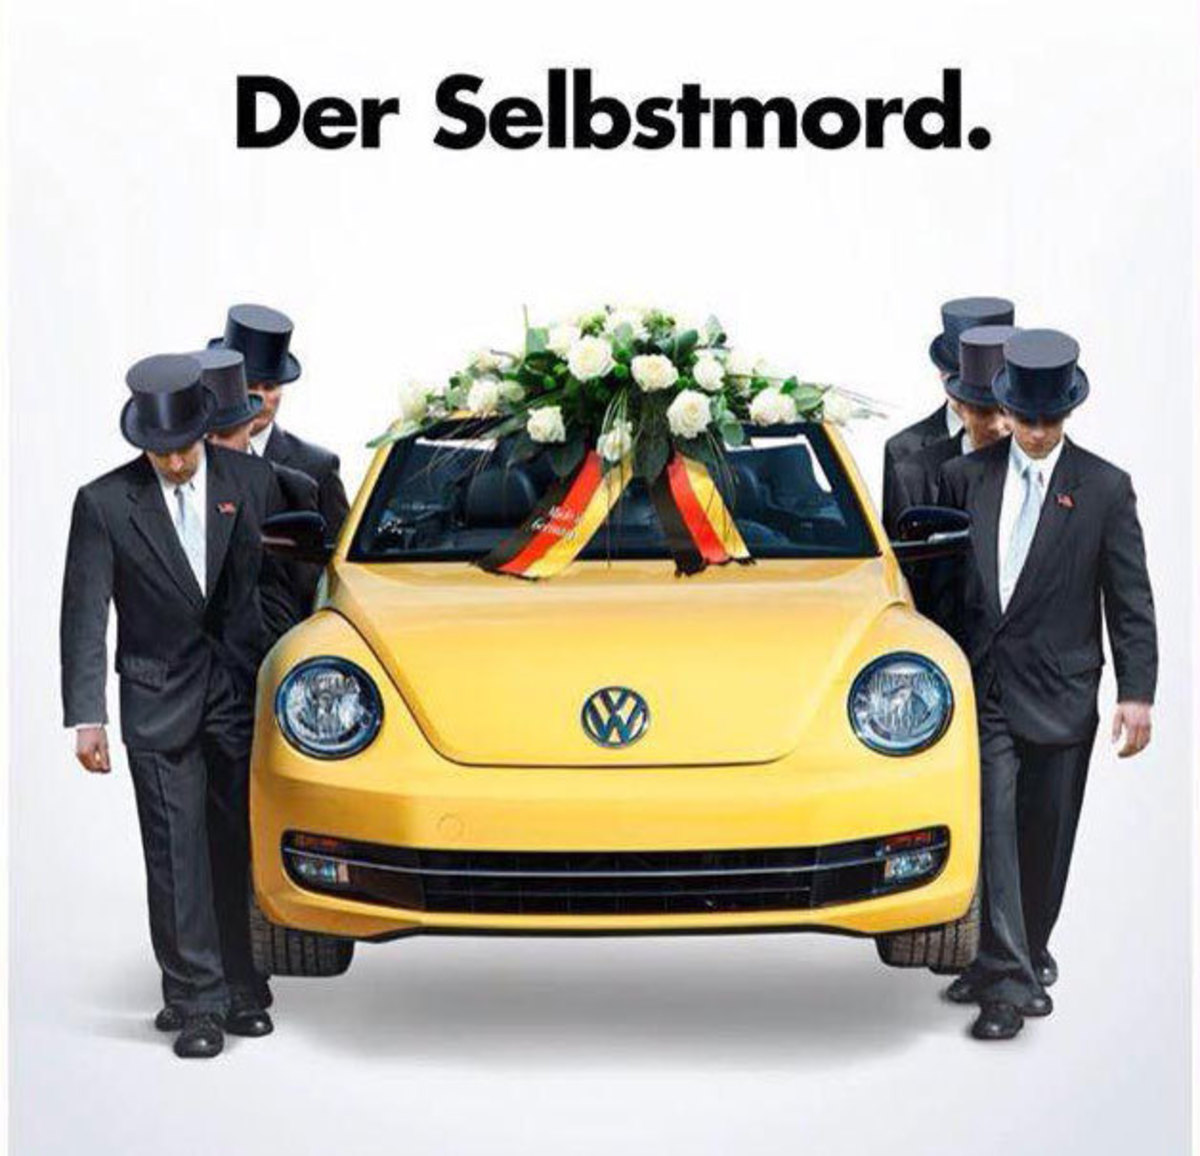 Εκπληκτικό πρωτοσέλιδο του Spiegel για το σκάνδαλο Volkswagen